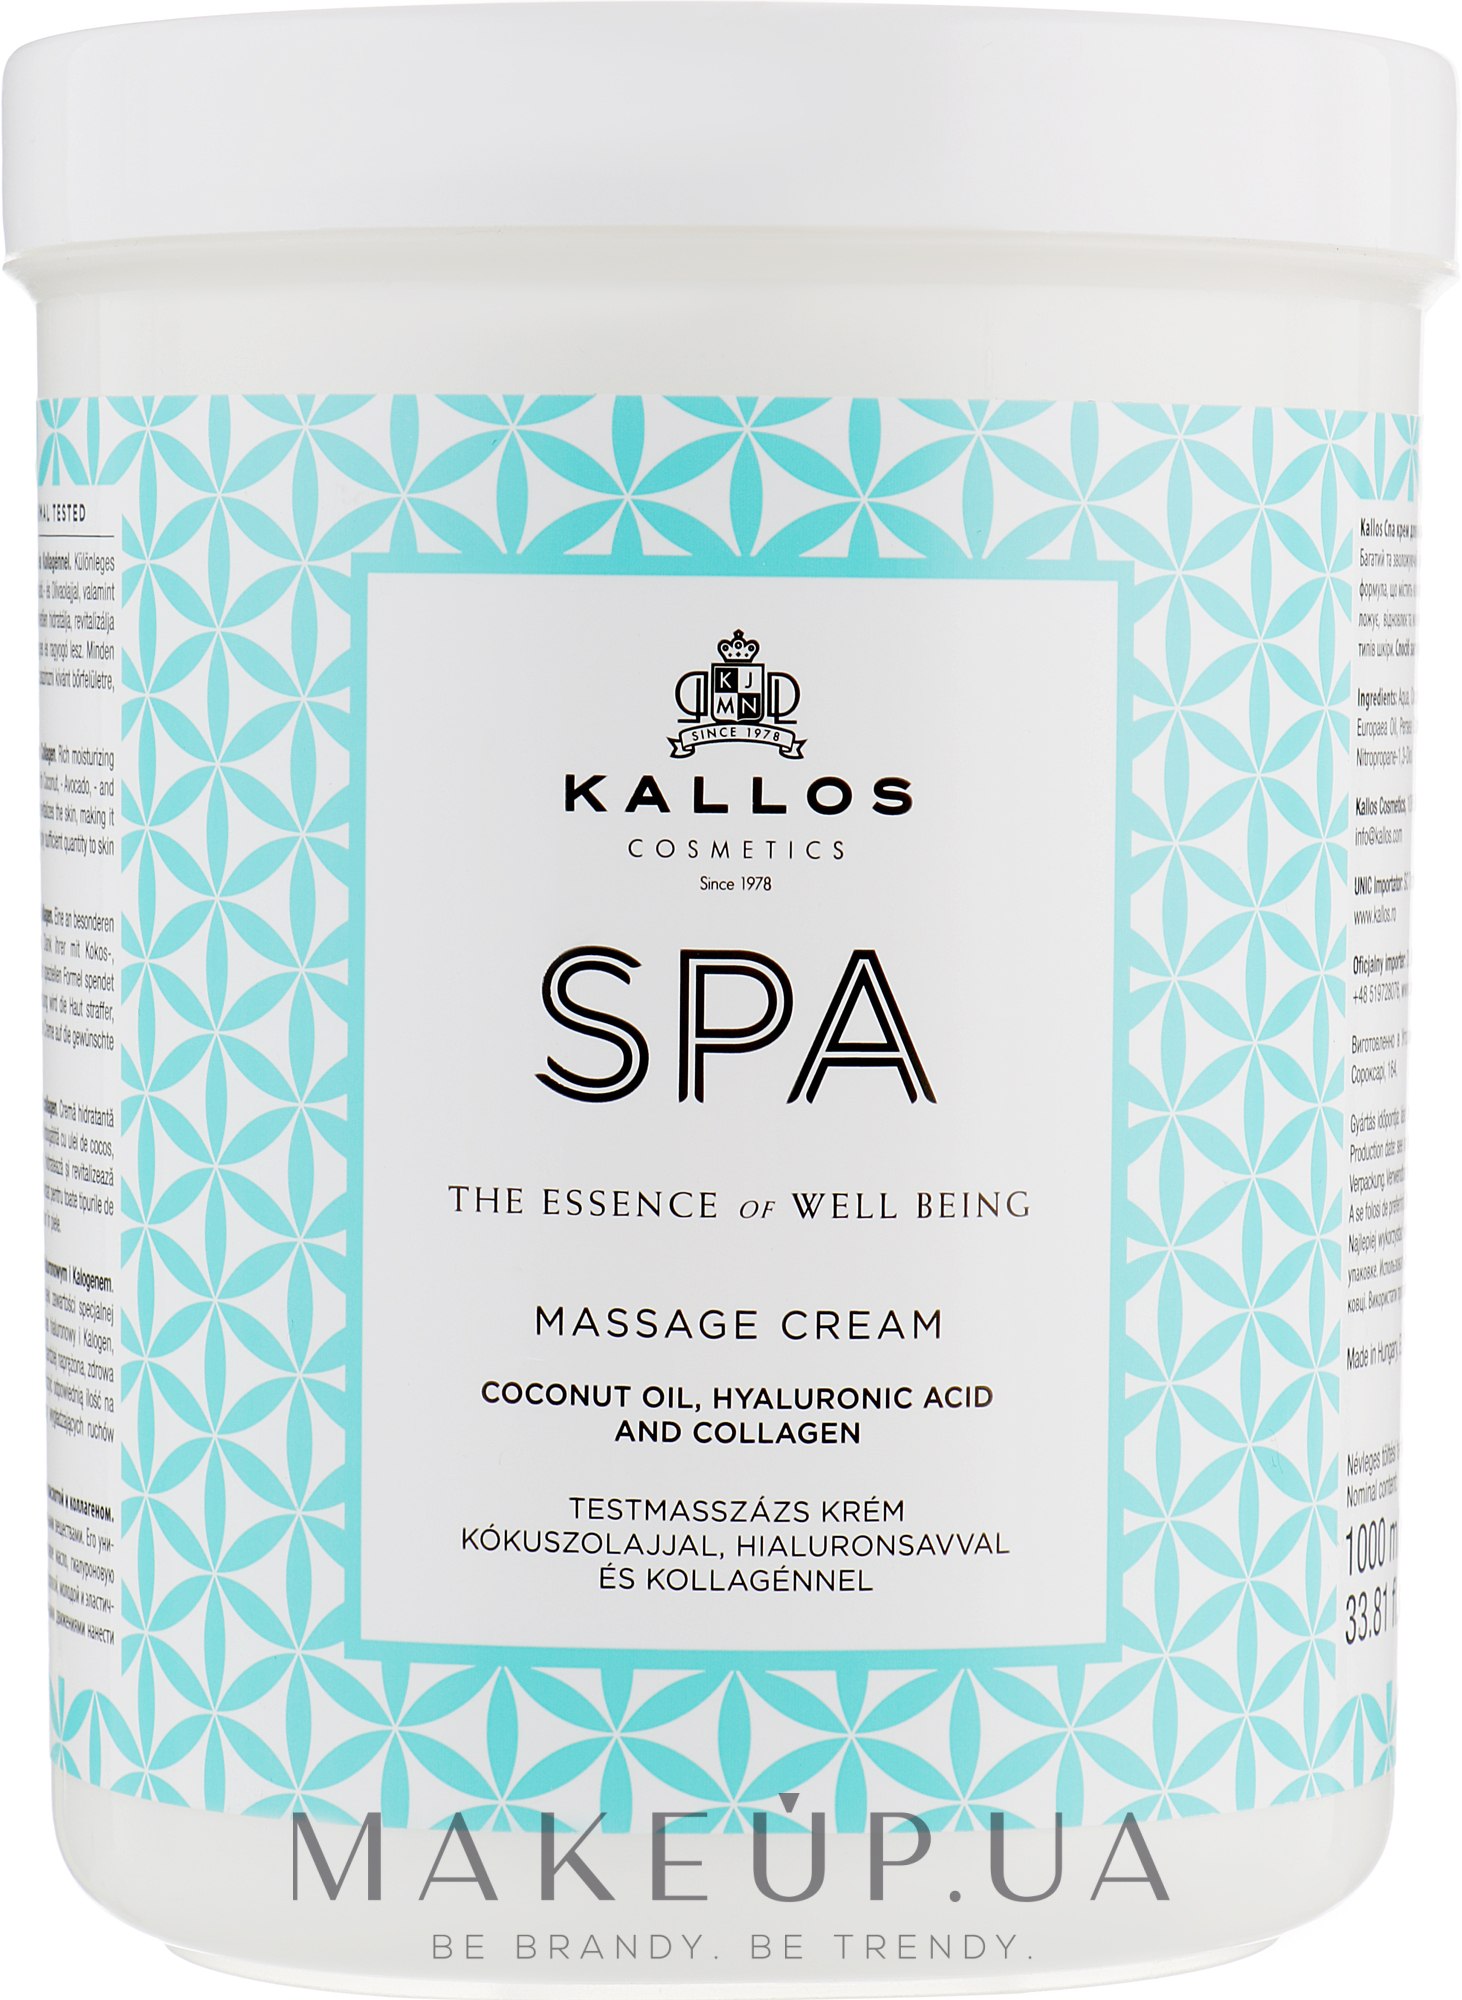 Крем з кокосовою олією, гіалуроновою кислотою і колагеном для масажу - Kallos Cosmetics SPA Hand&Foot Care Massage Cream — фото 1000ml